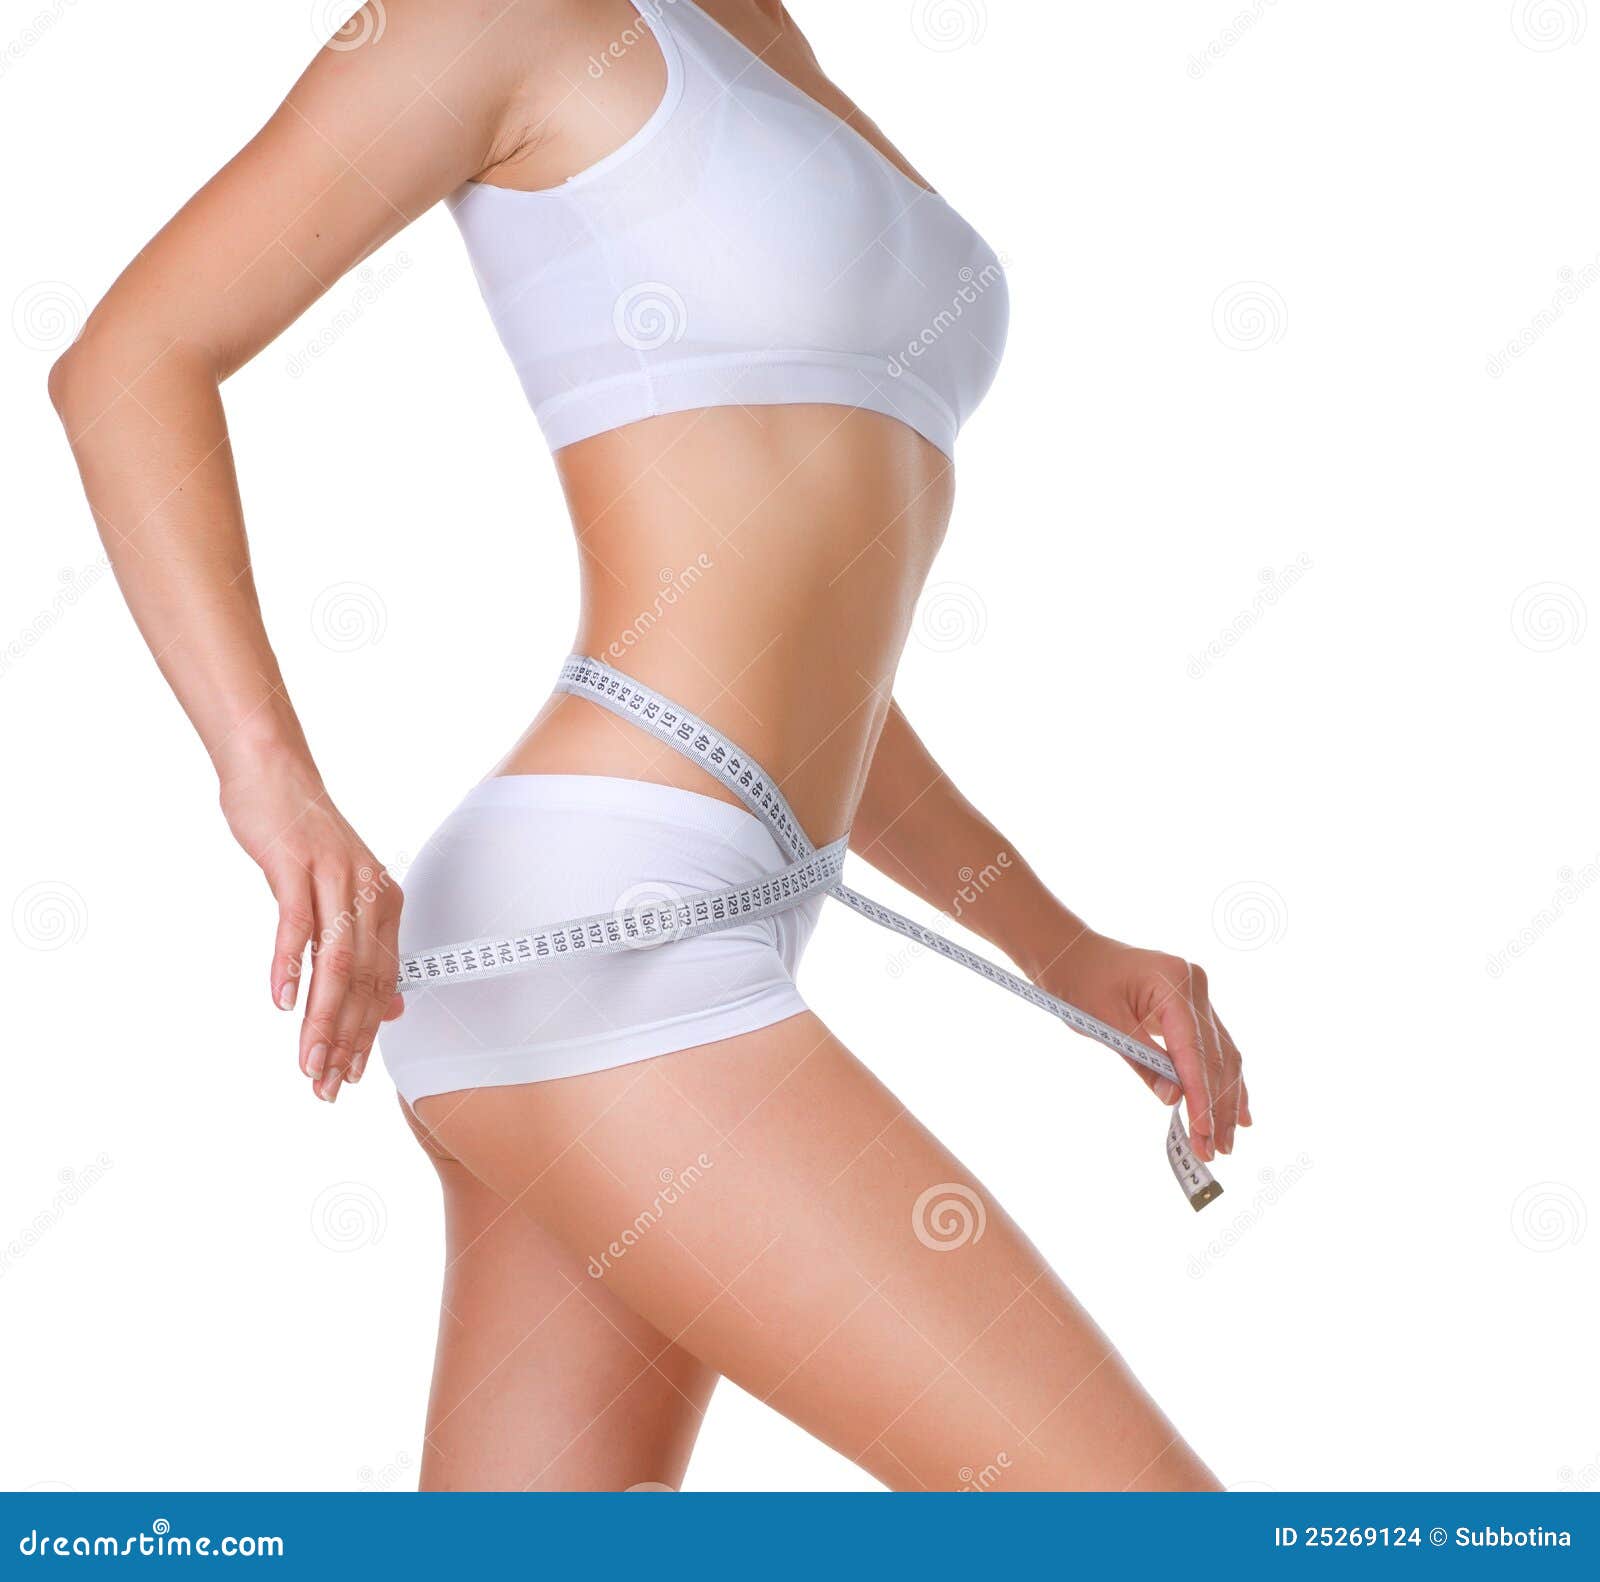 woman measuring her waistline. diet